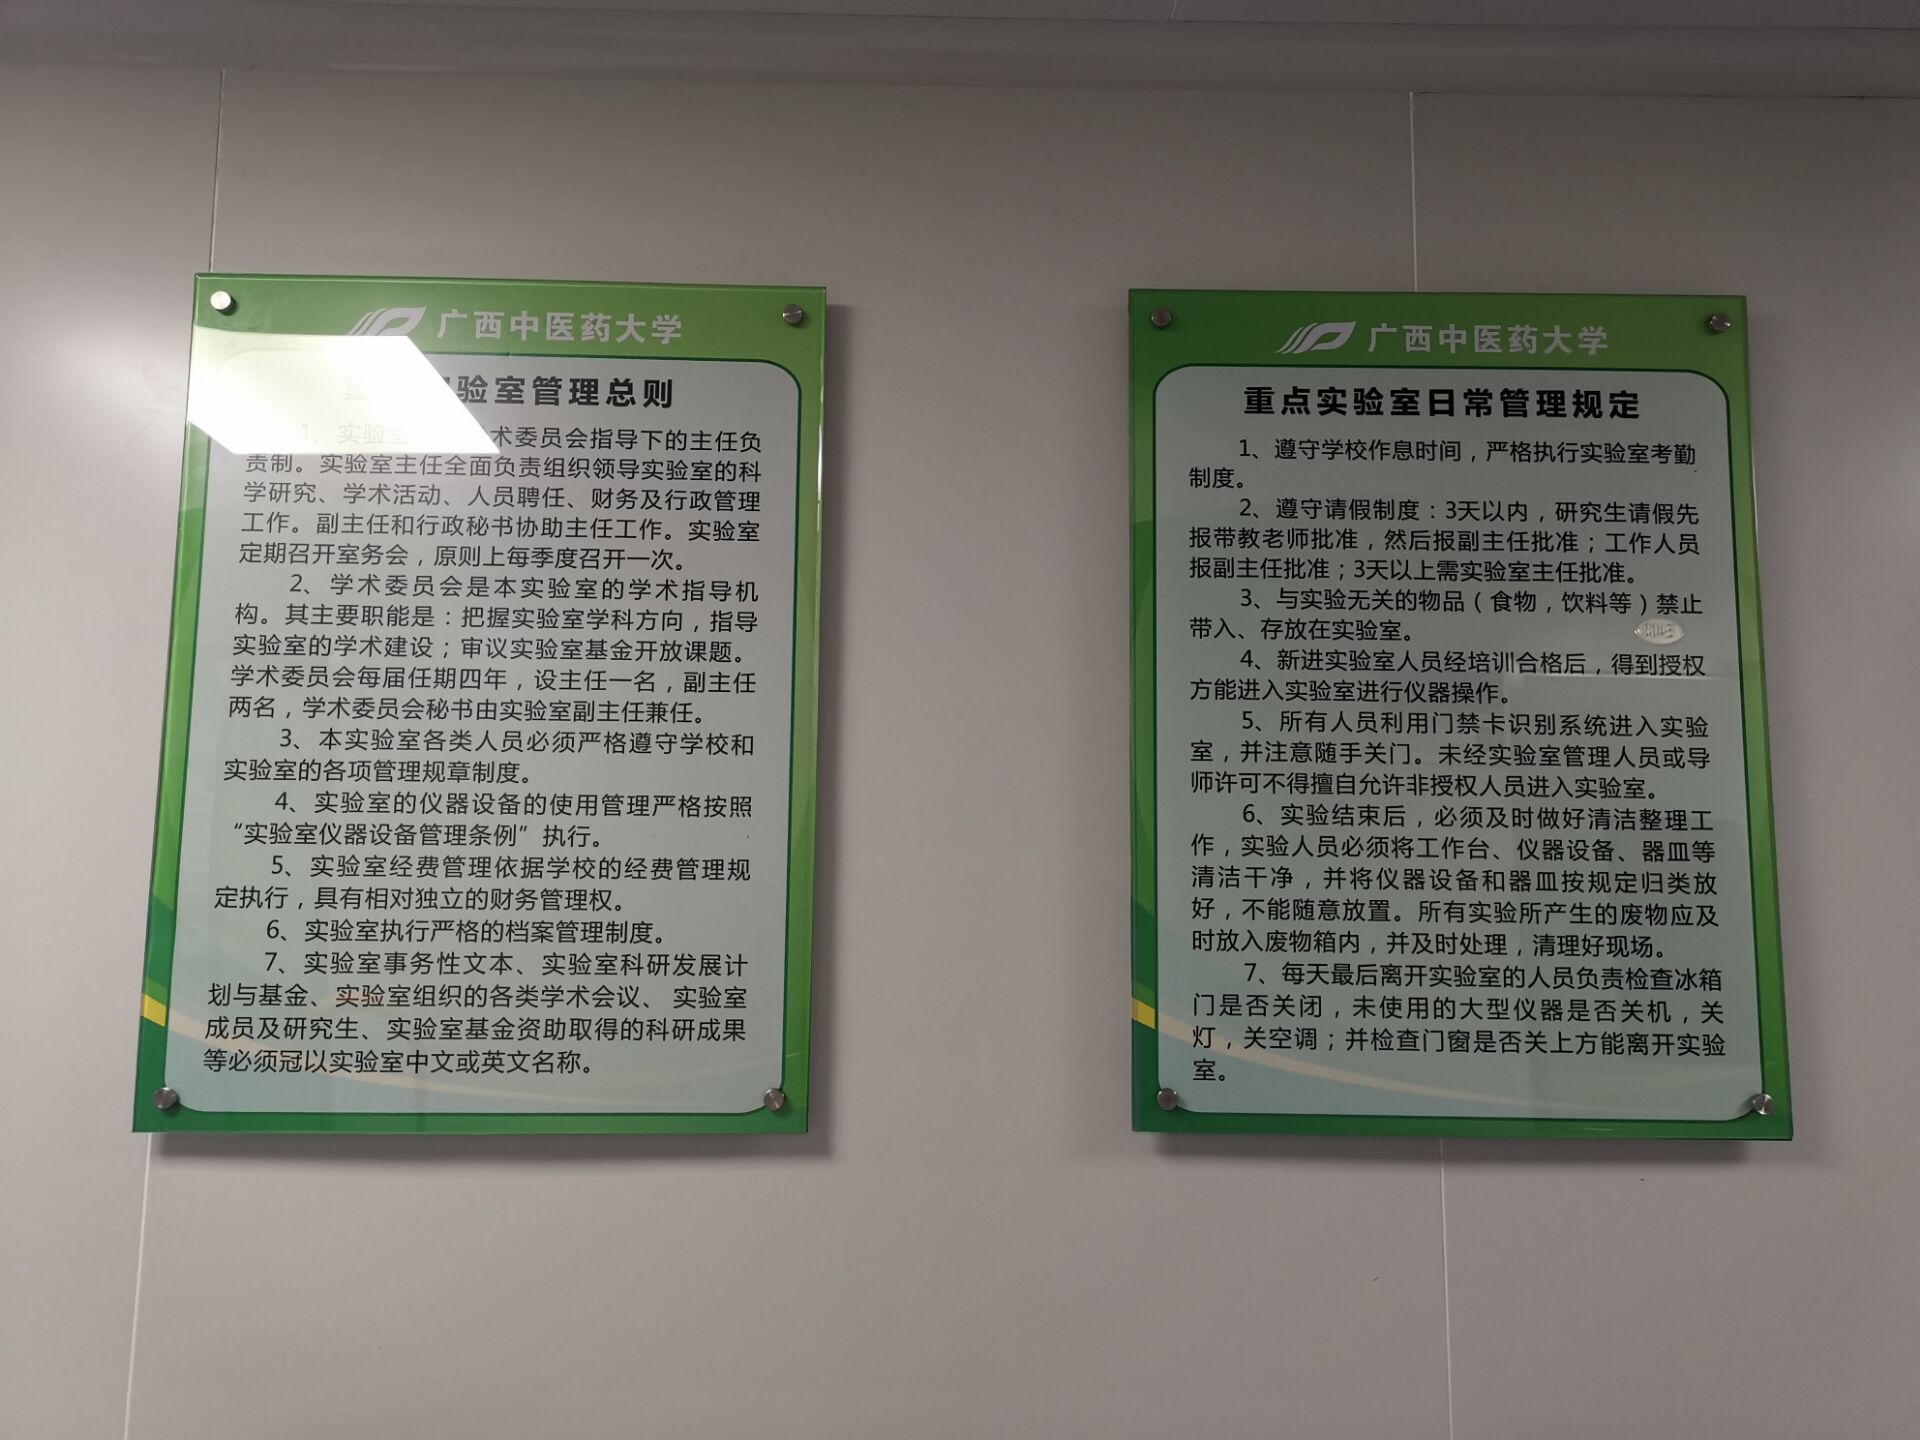 广西中医药大学科学实验中心广告宣传栏制度牌